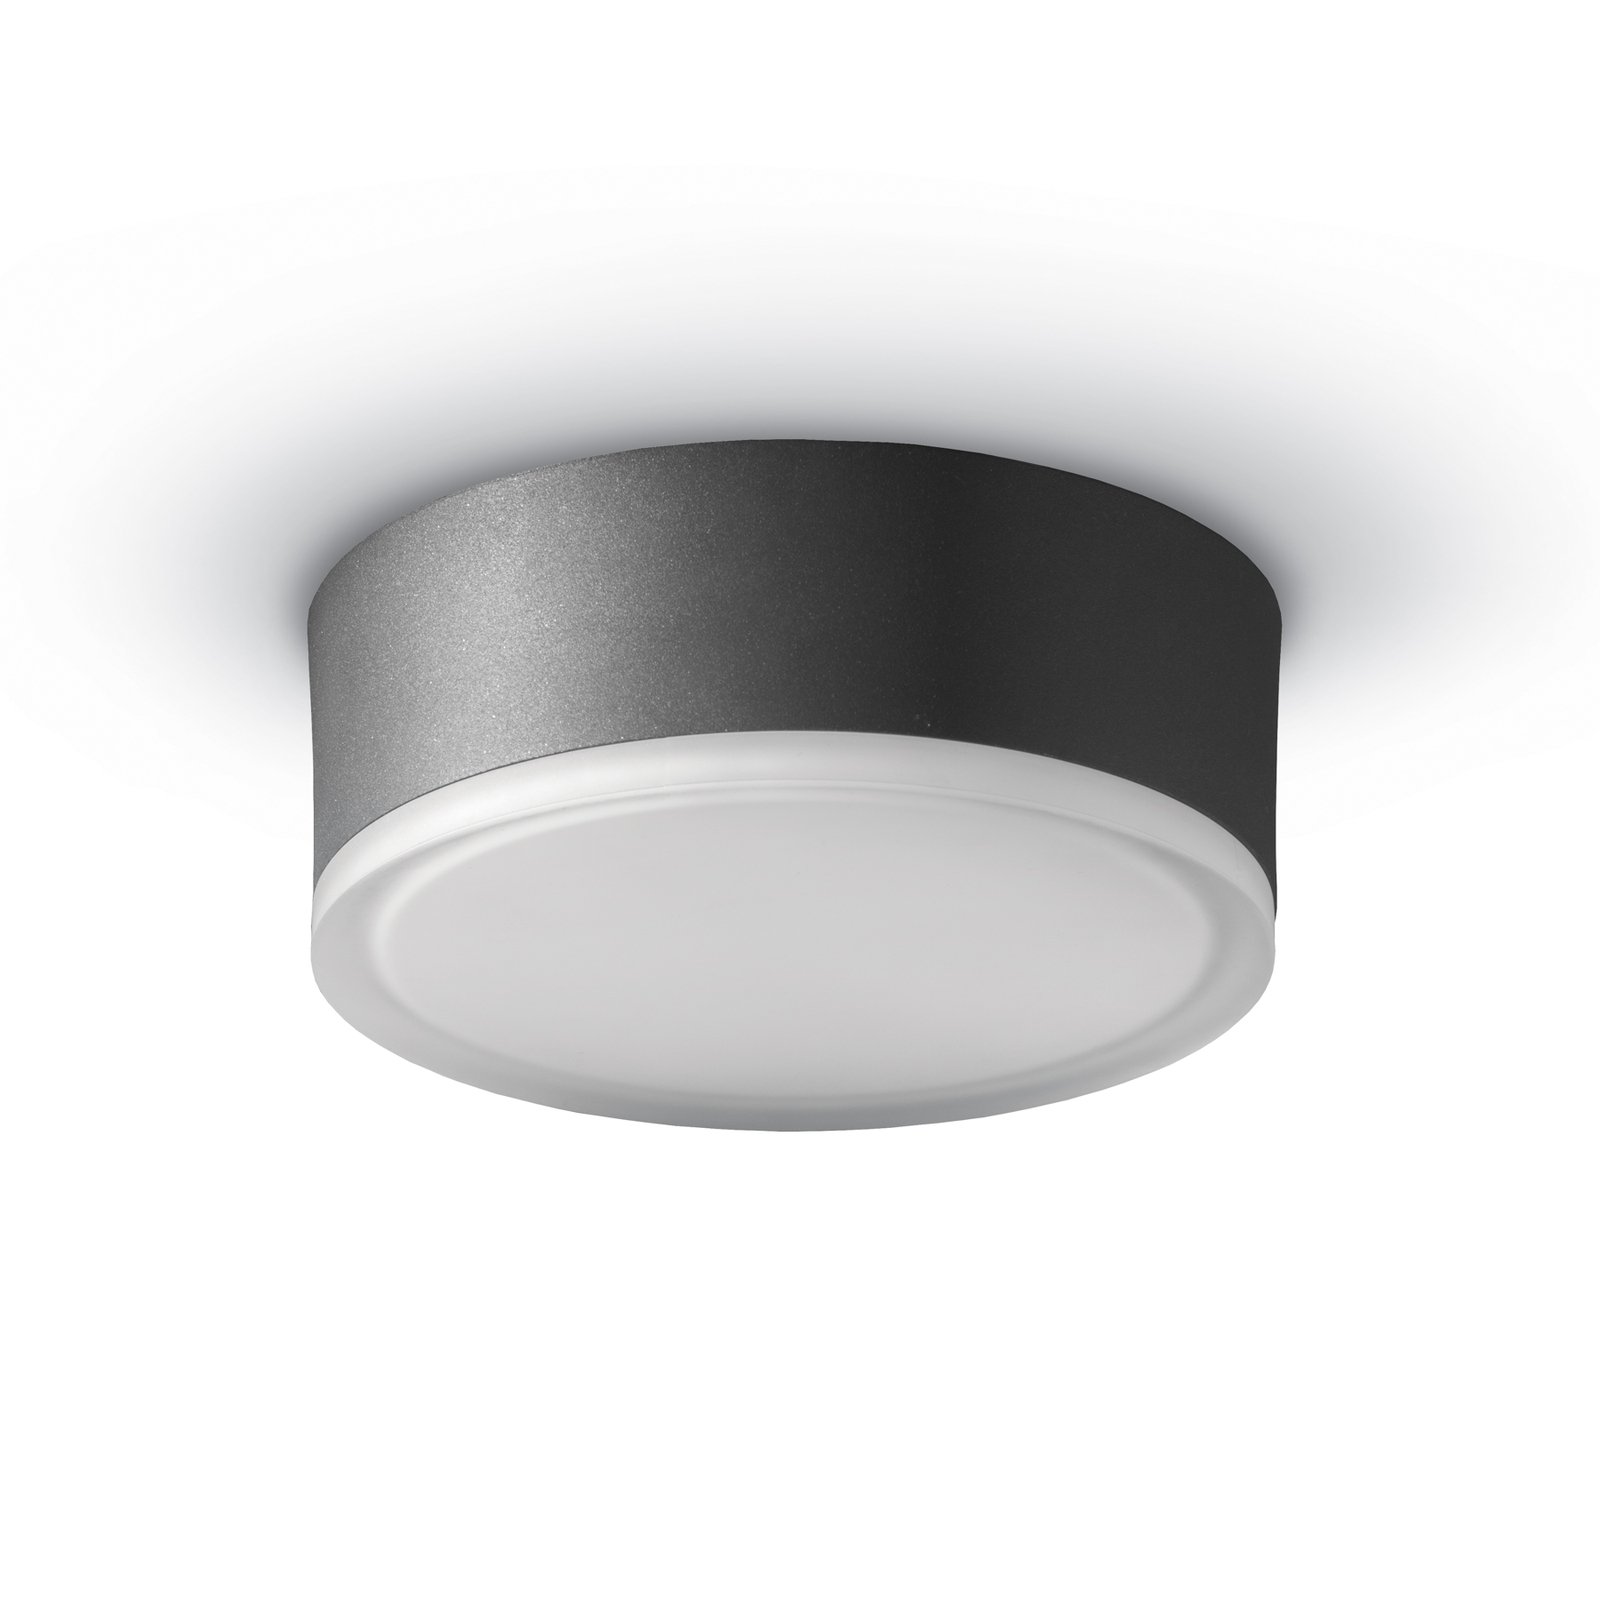 1421 LED ceiling light outdoors graphite Ø 20.5 cm